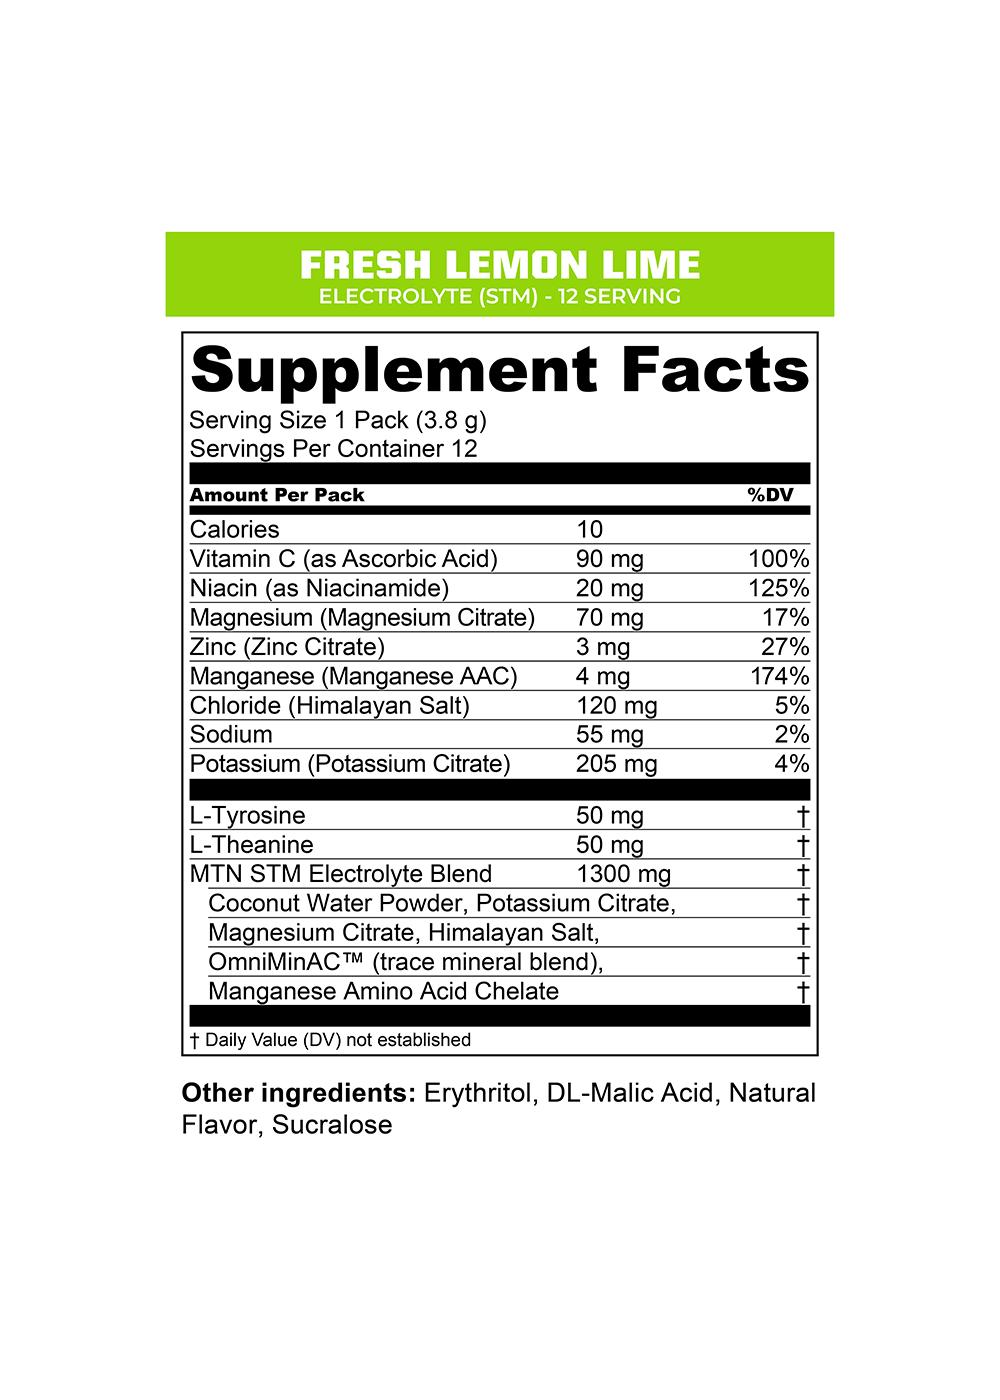 MTN OPS Electrolyte On-The-Go Packs - Fresh Lemon Lime; image 2 of 2